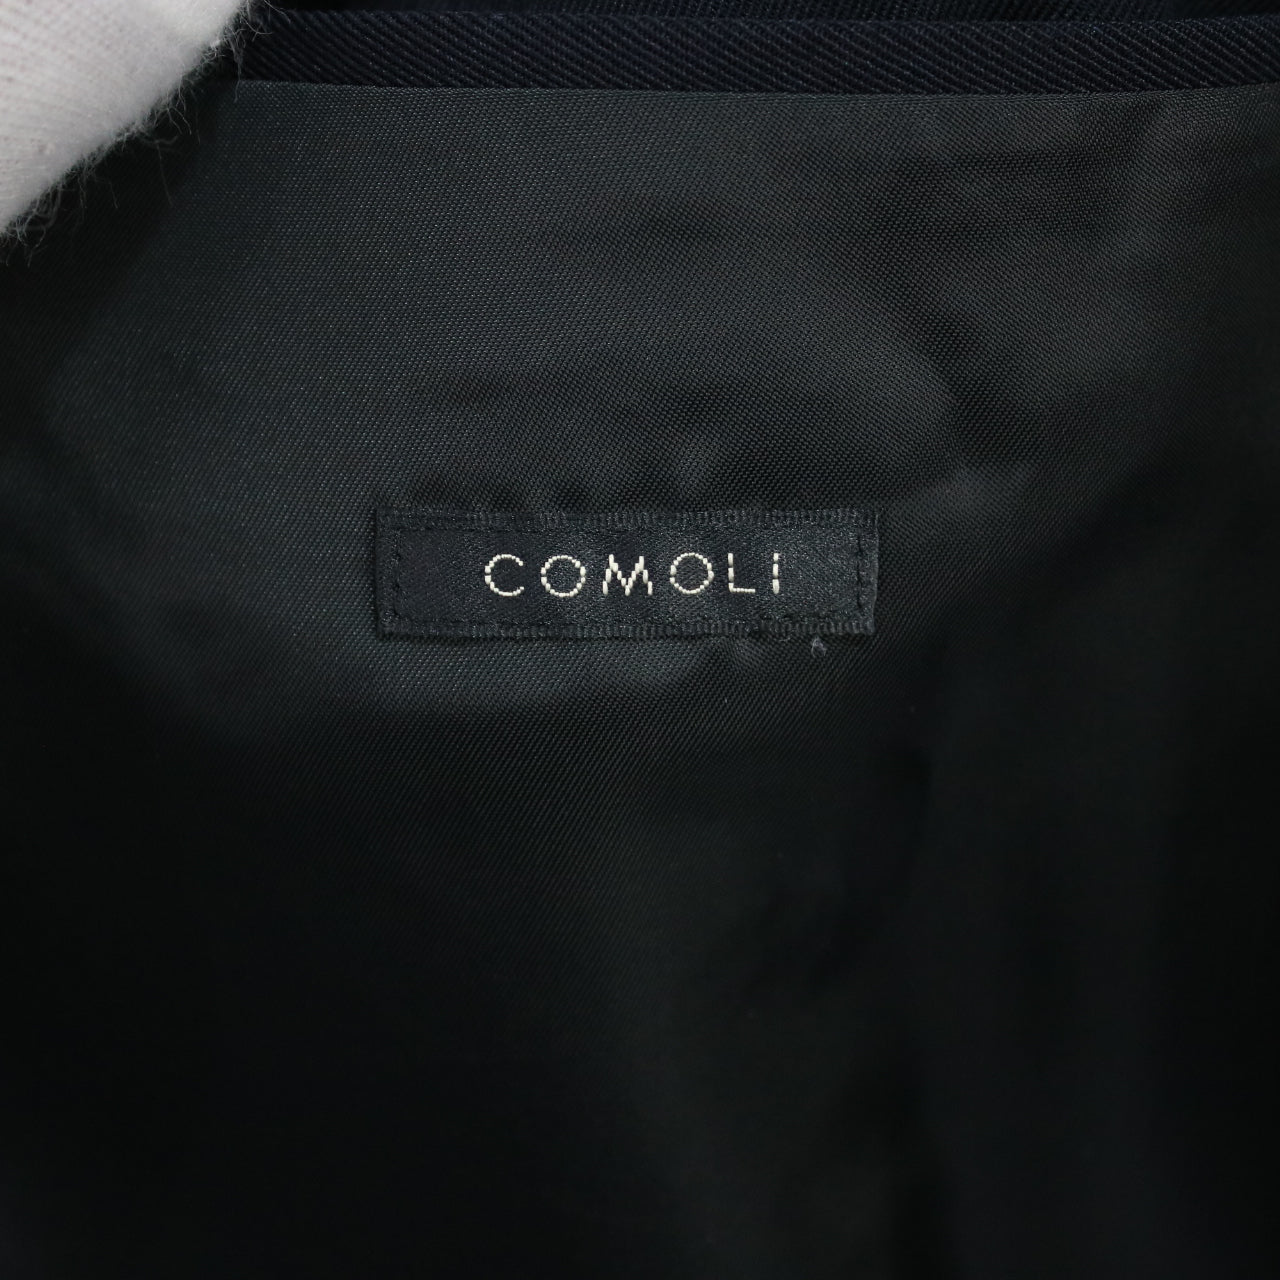 COMOLI / コモリ | 2020SS | ウールギャバ バルカラーコート | 1 |